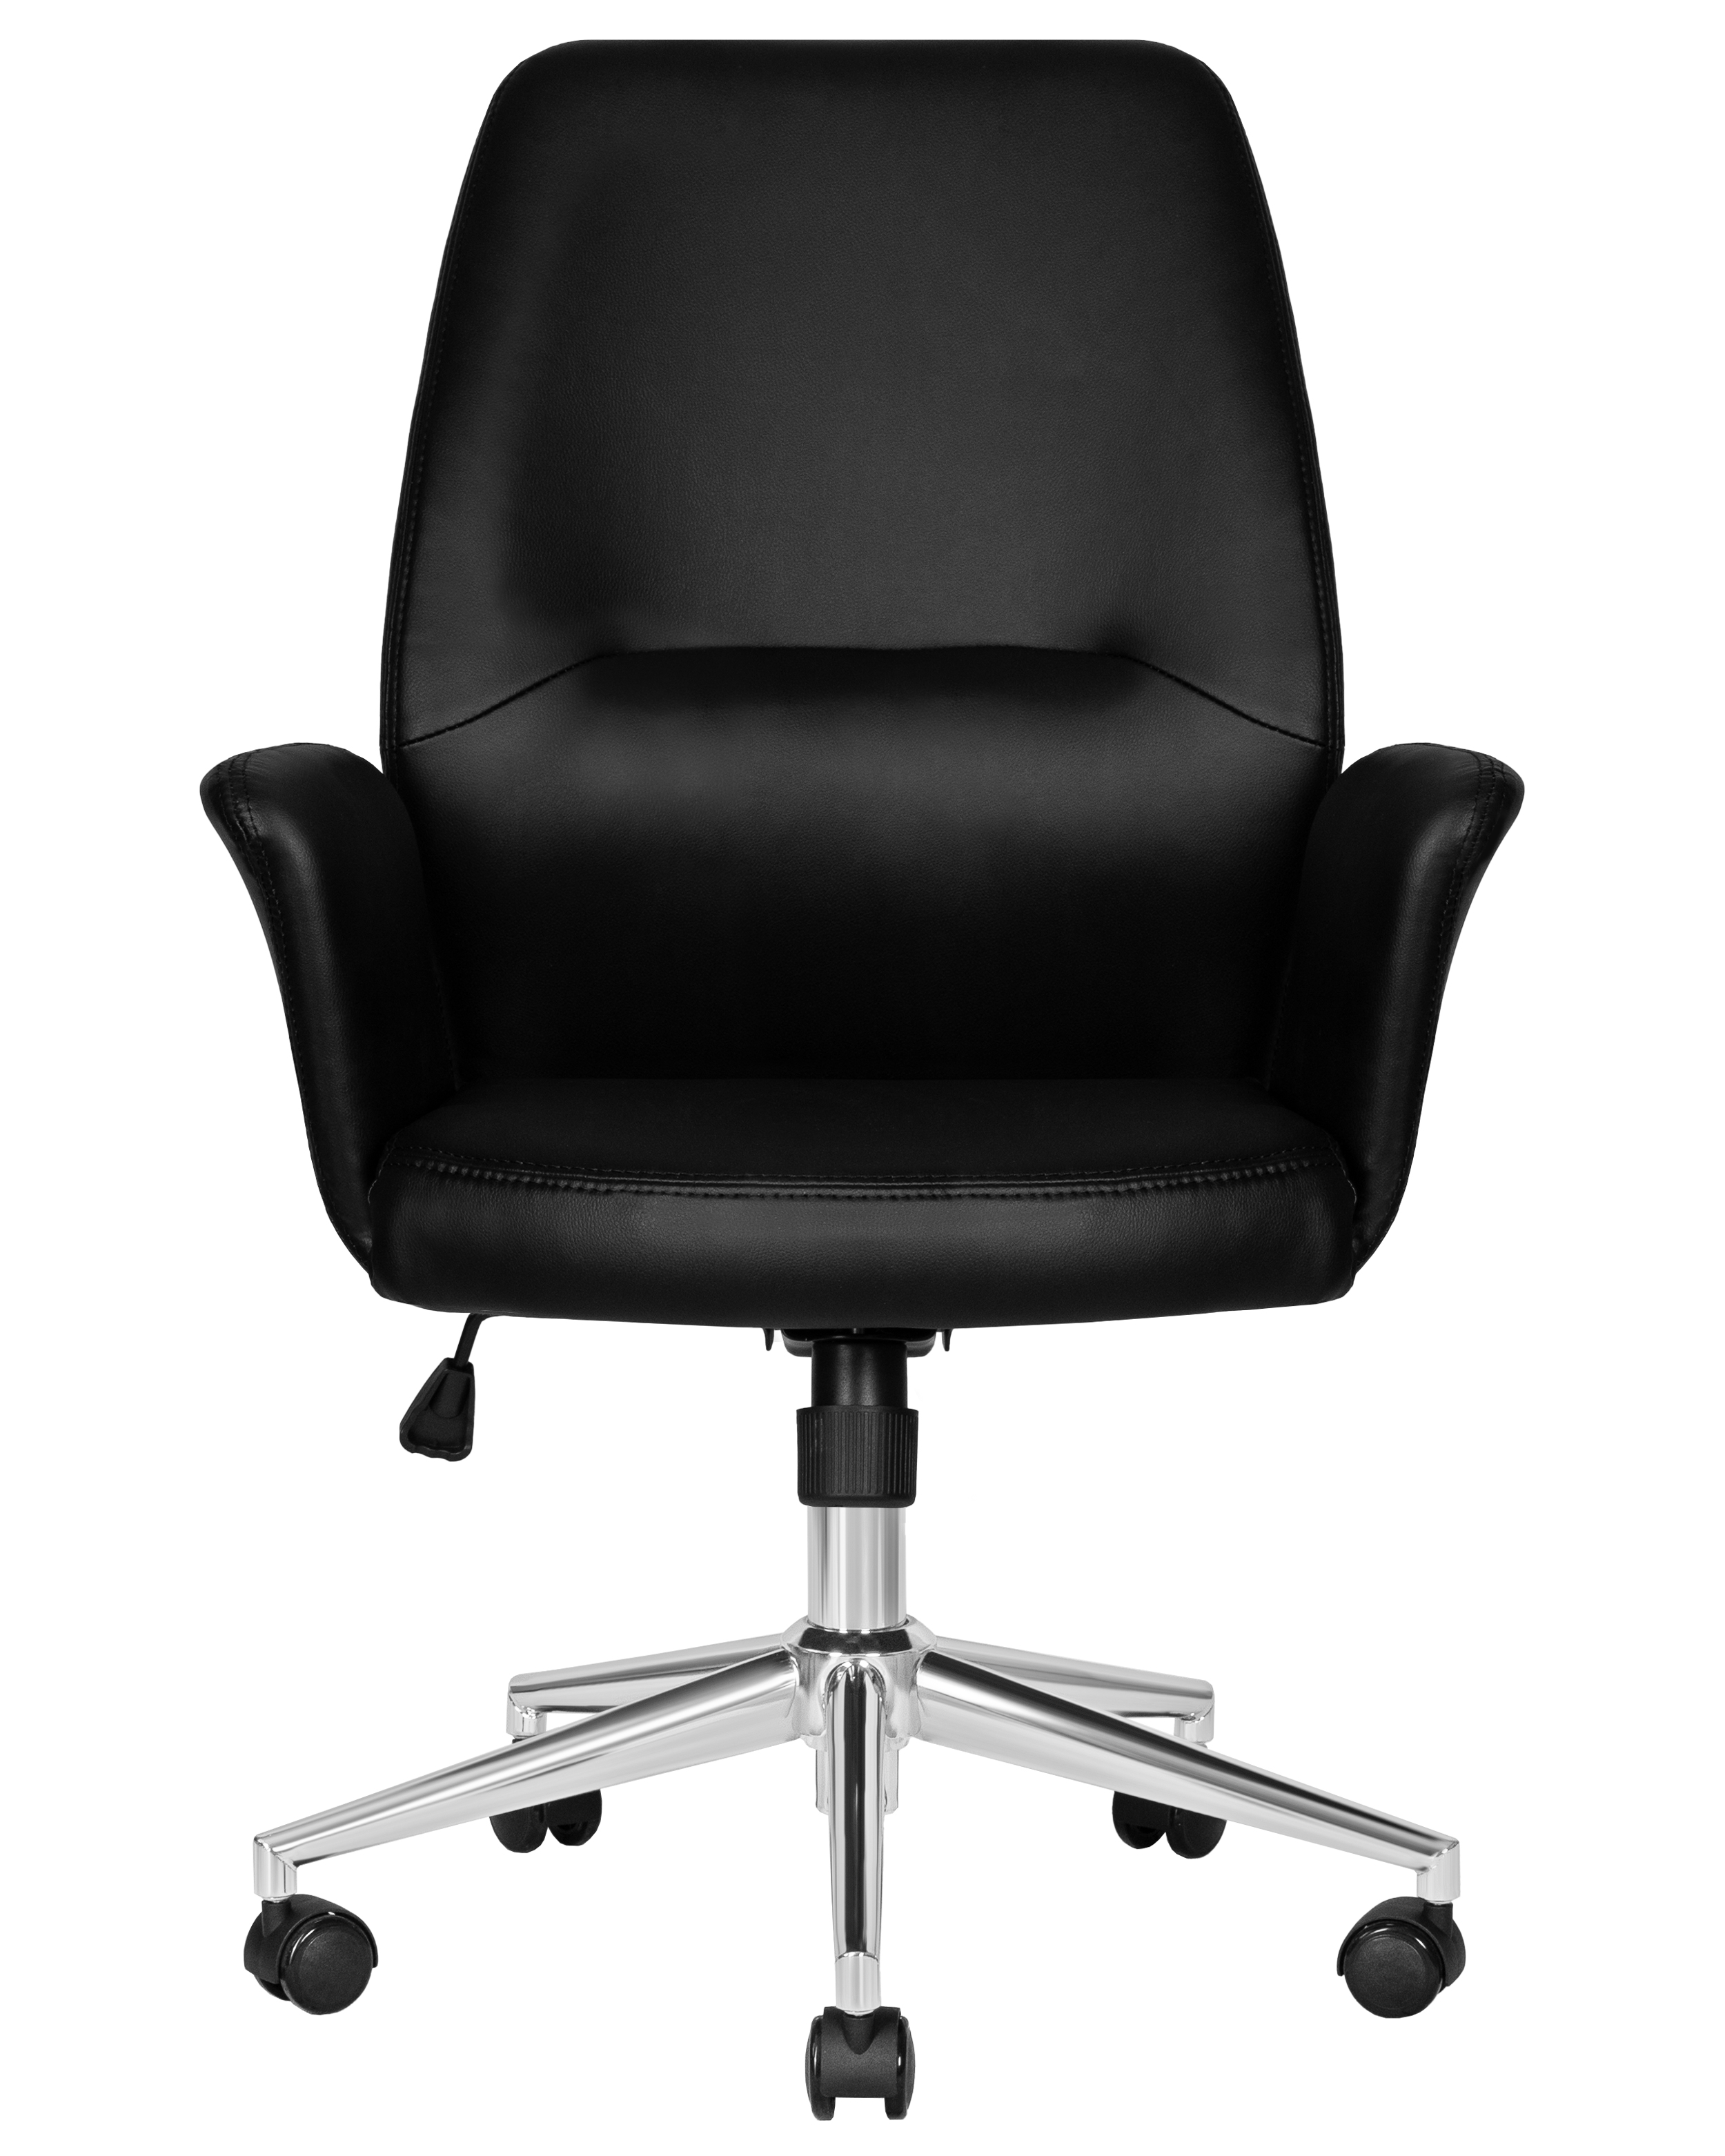 Офисное кресло для руководителей DOBRIN SAMUEL (черный)